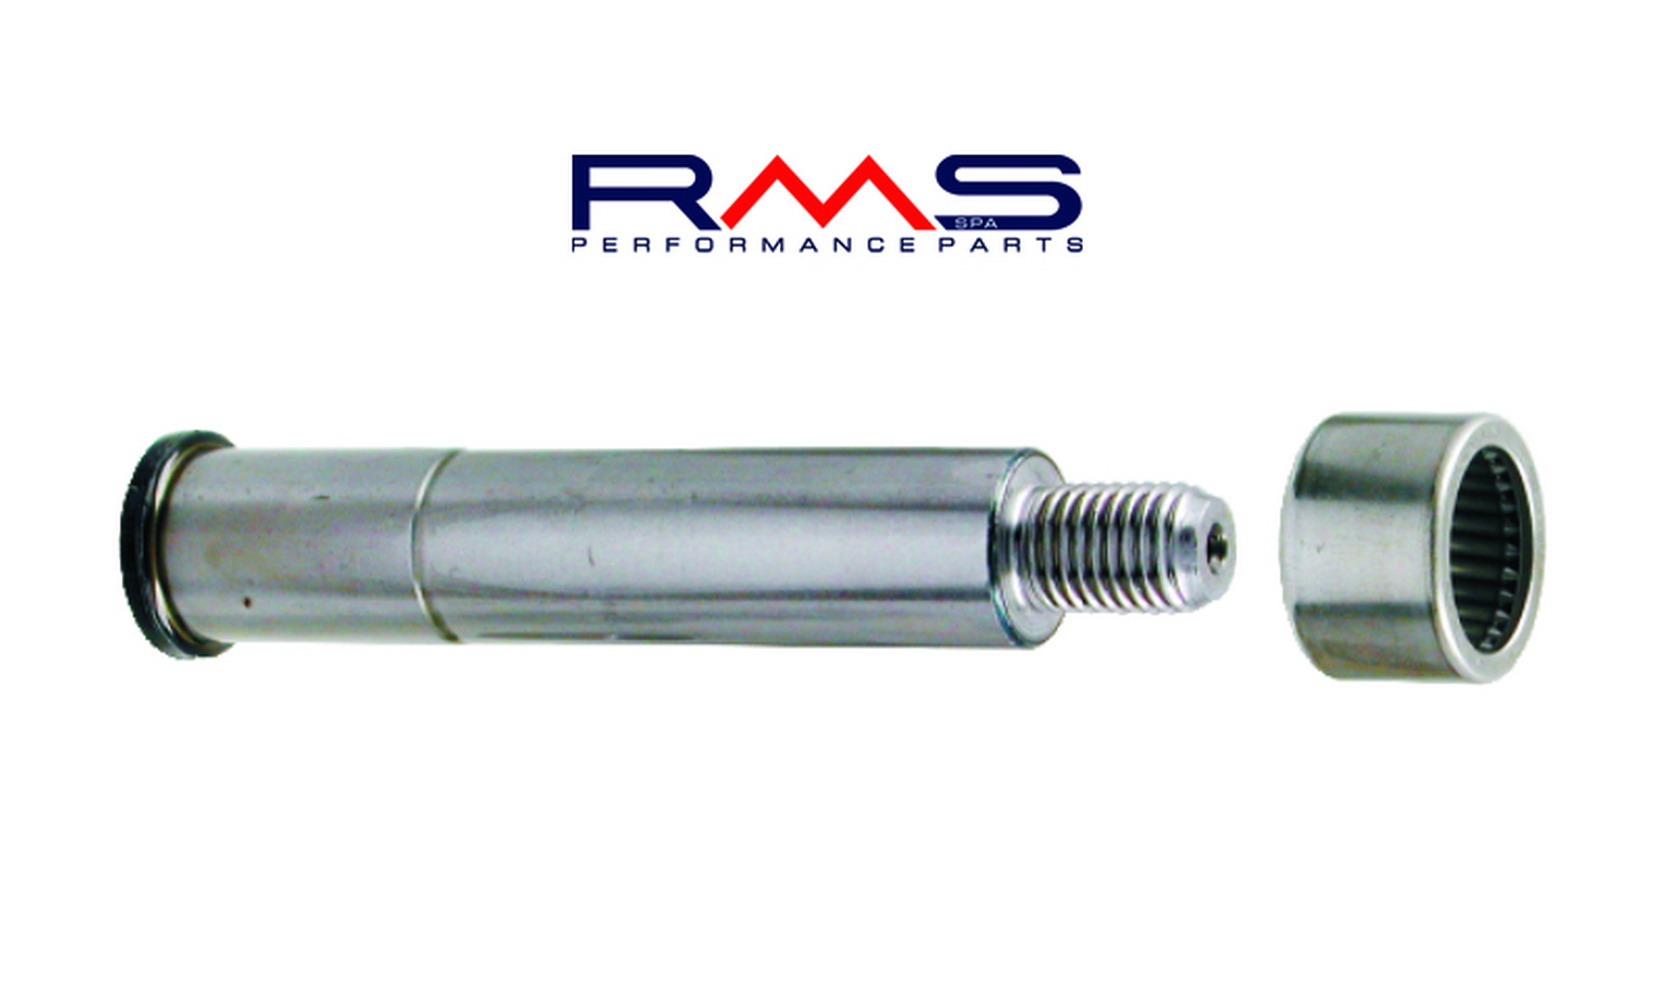 Obrázek produktu Suspension pin RMS 225180070 přední with grease nipple 225180070